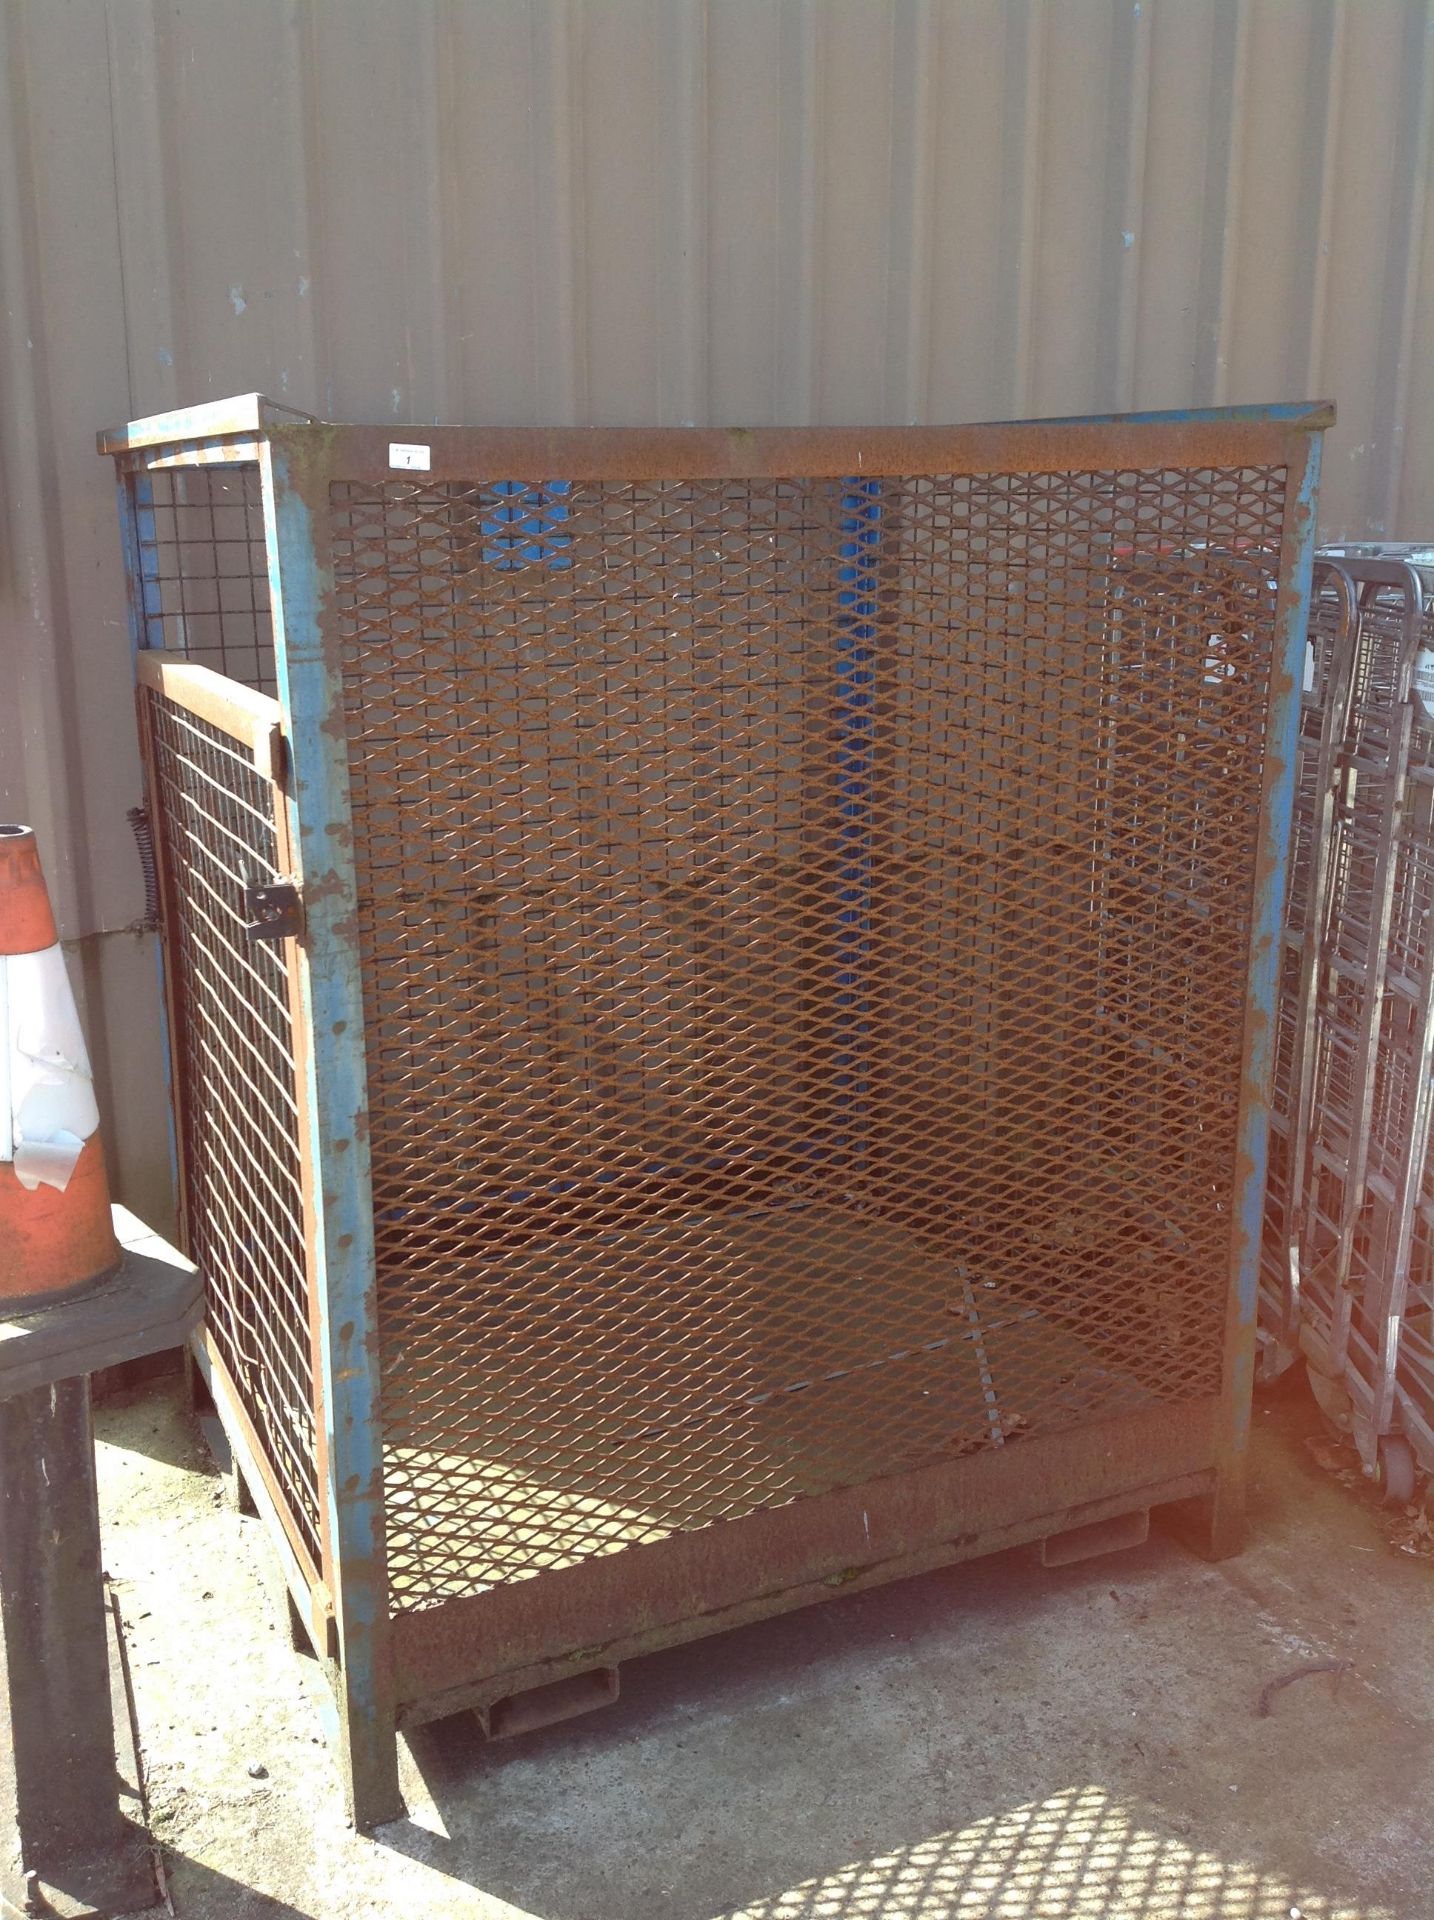 Forklift man cage